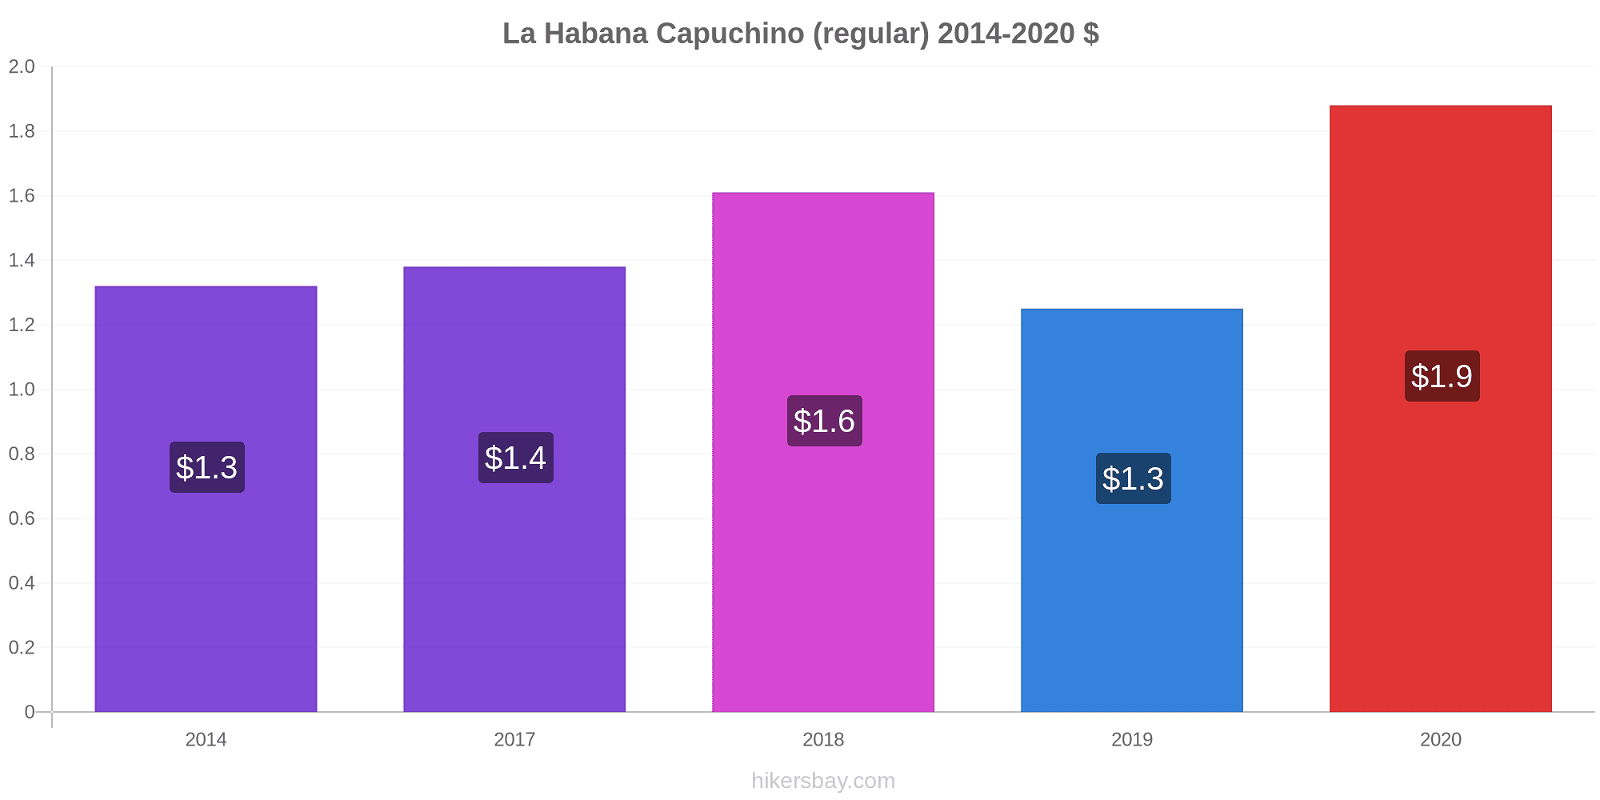 La Habana cambios de precios Capuchino (regular) hikersbay.com